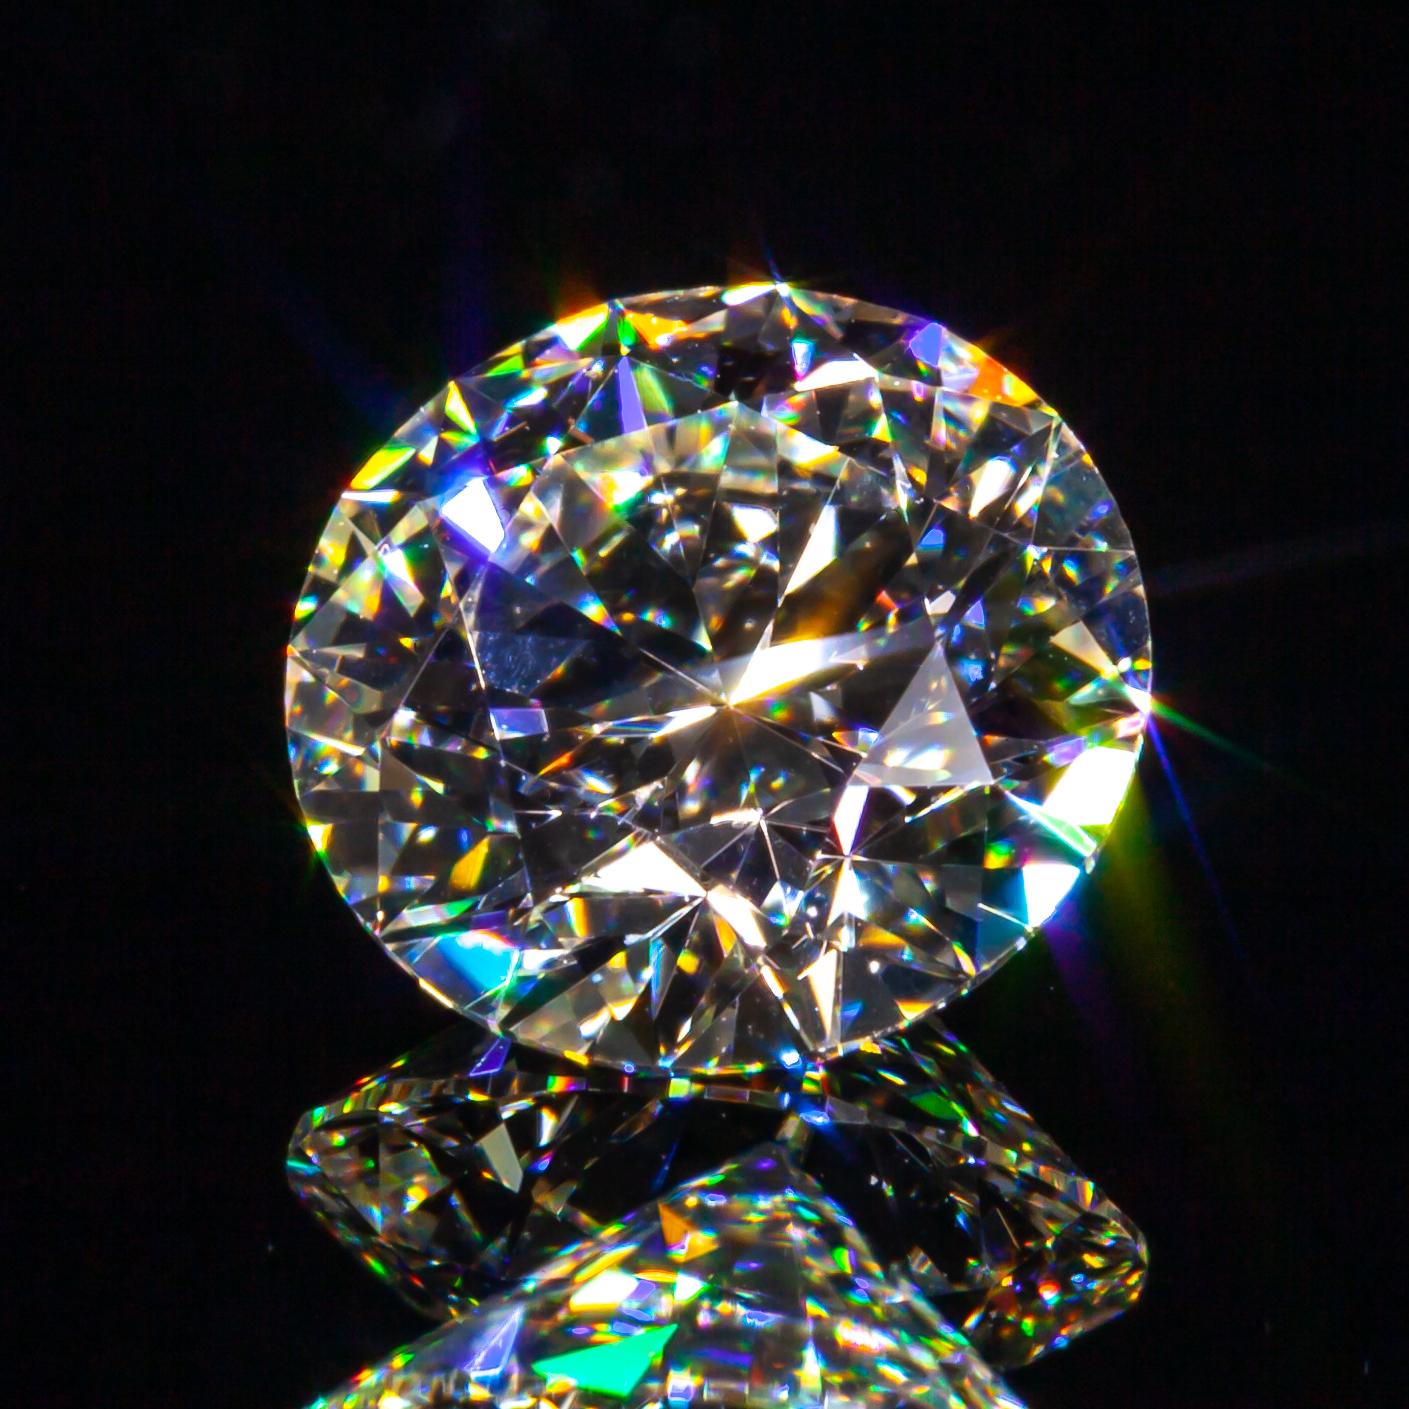 0,72 carat Loose J / VVS2 Round Brilliant Cut Diamond certifié GIA

Informations générales sur le diamant
Taille du diamant : Brilliante ronde
Dimensions : 5.86  x  5.83  -  3.51 mm

Résultats de la classification des diamants
Poids en carats :